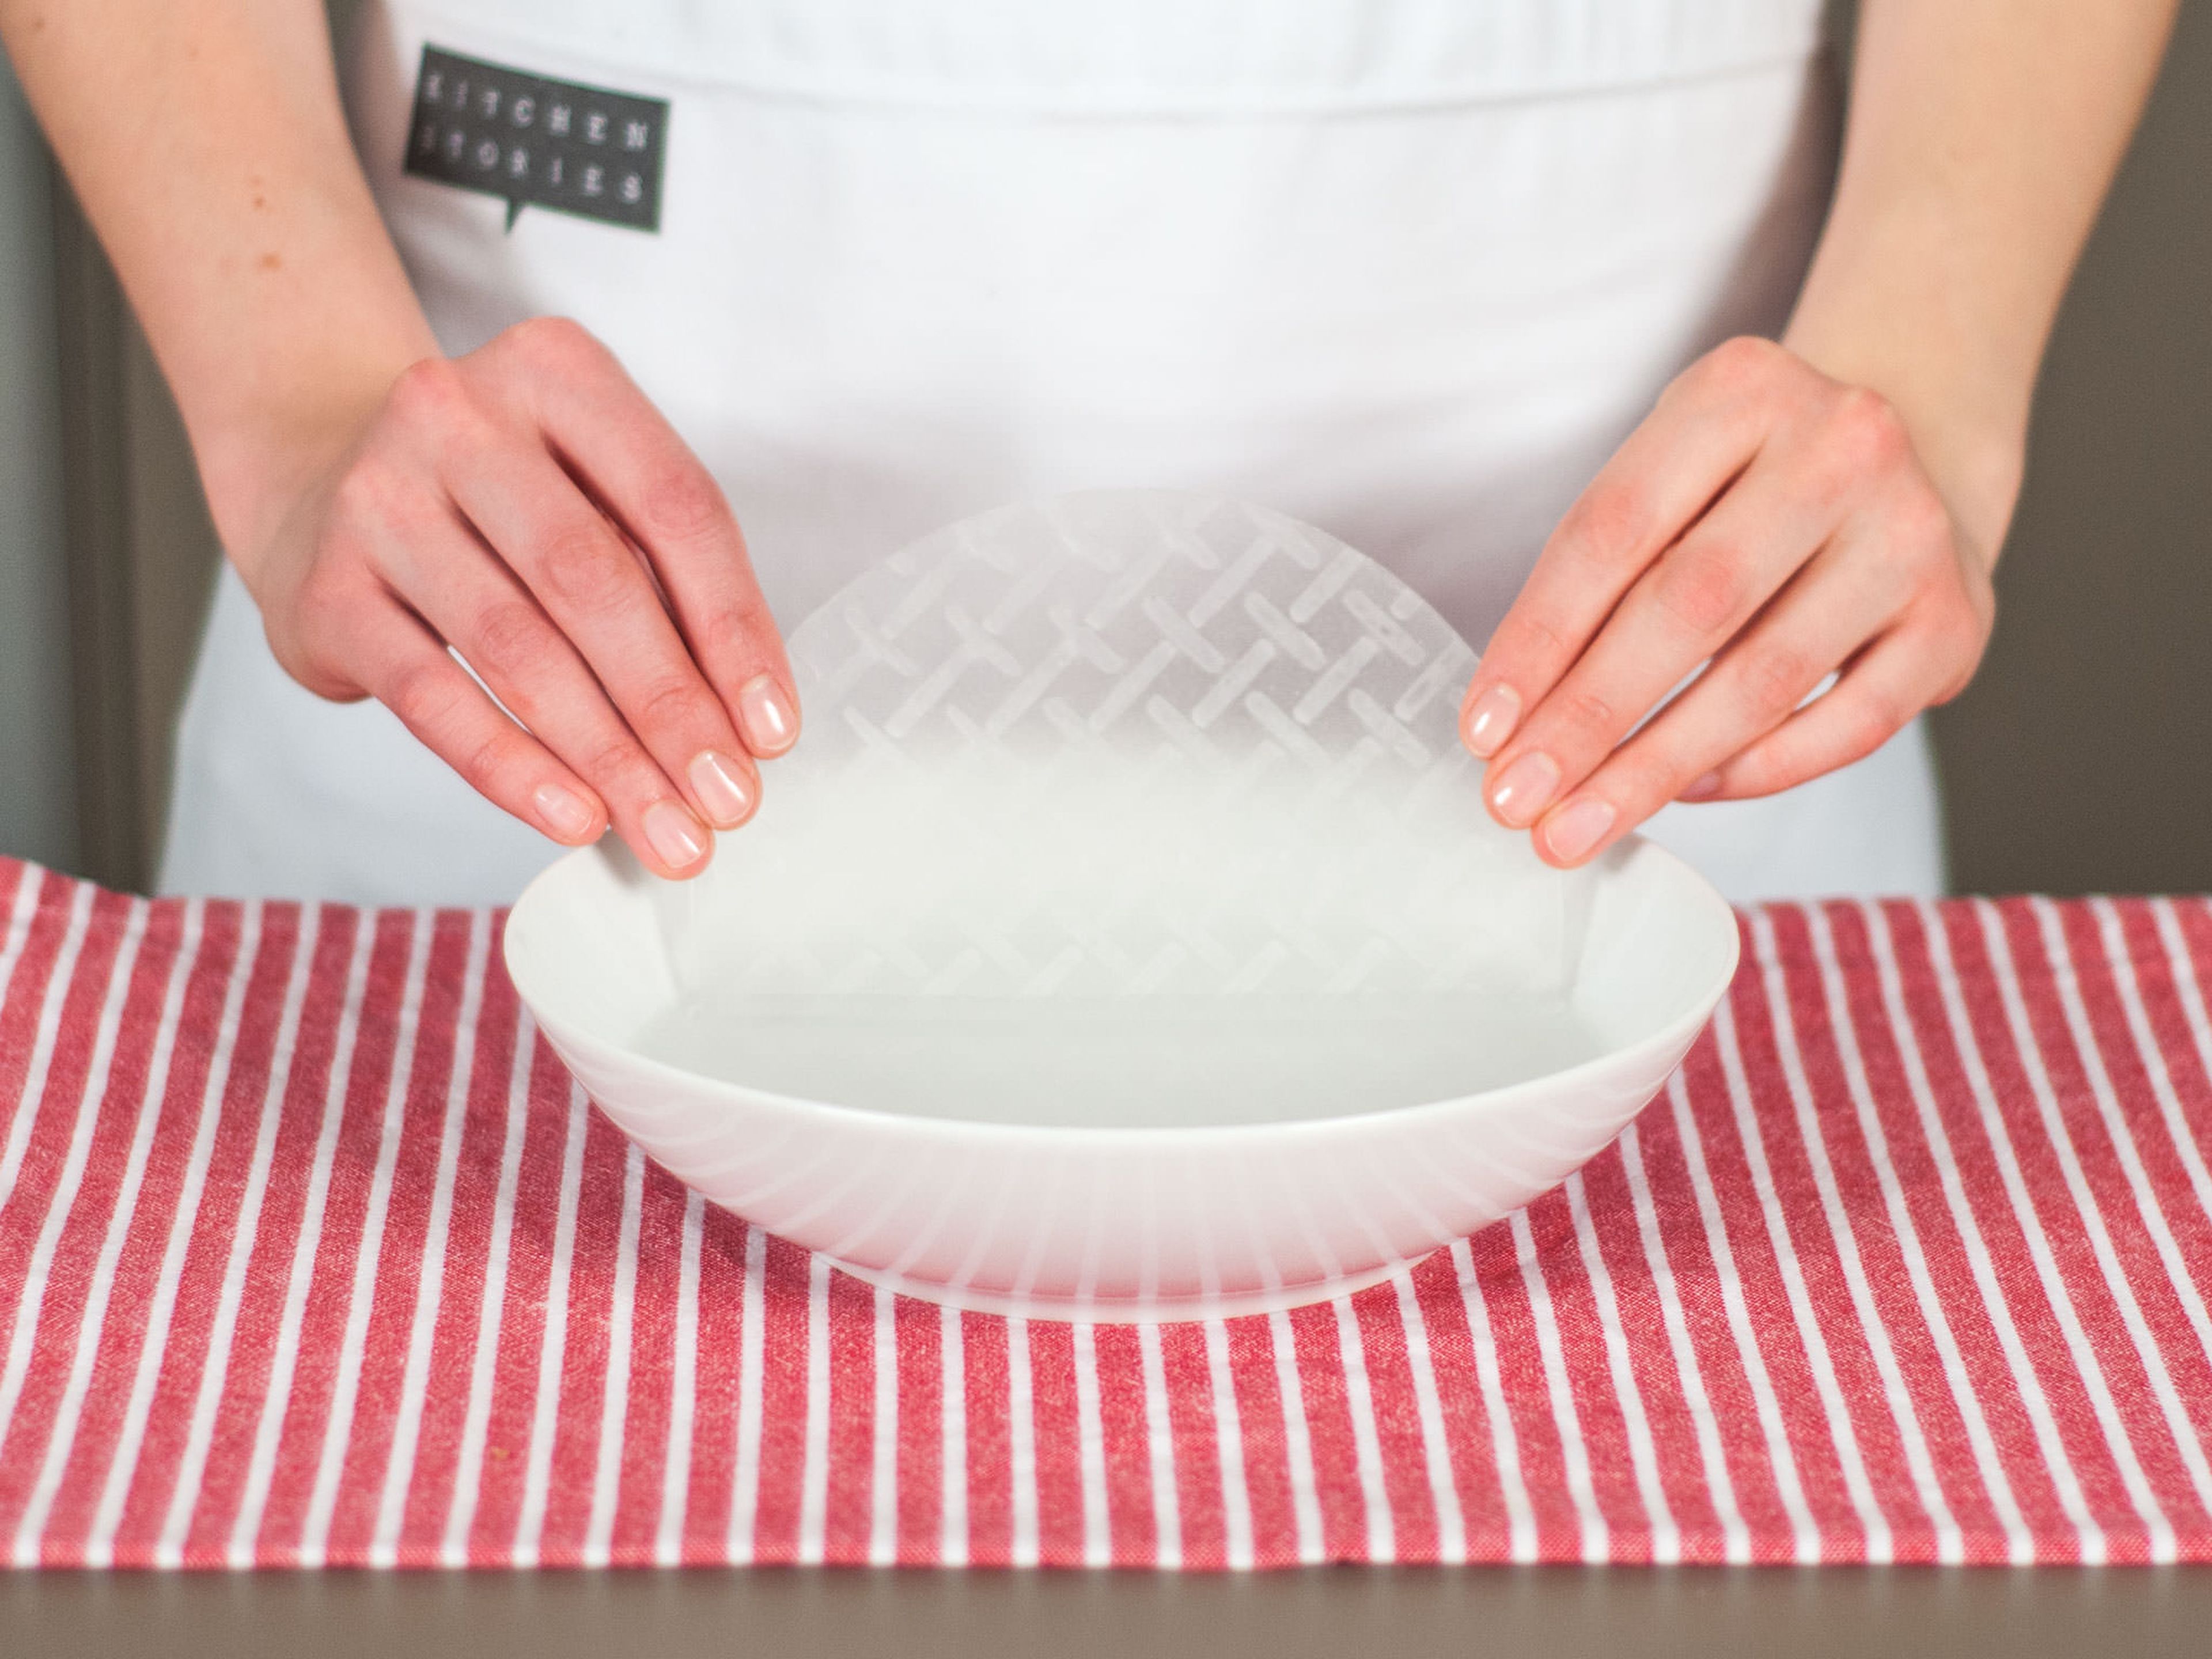 Reispapier gleichmäßig mit Wasser bedecken und ca. 1 Min. einweichen lassen. Leicht schütteln, damit das überschüssige Wasser abtropft. Auf einem Teller oder Schneidebrett beiseitestellen.